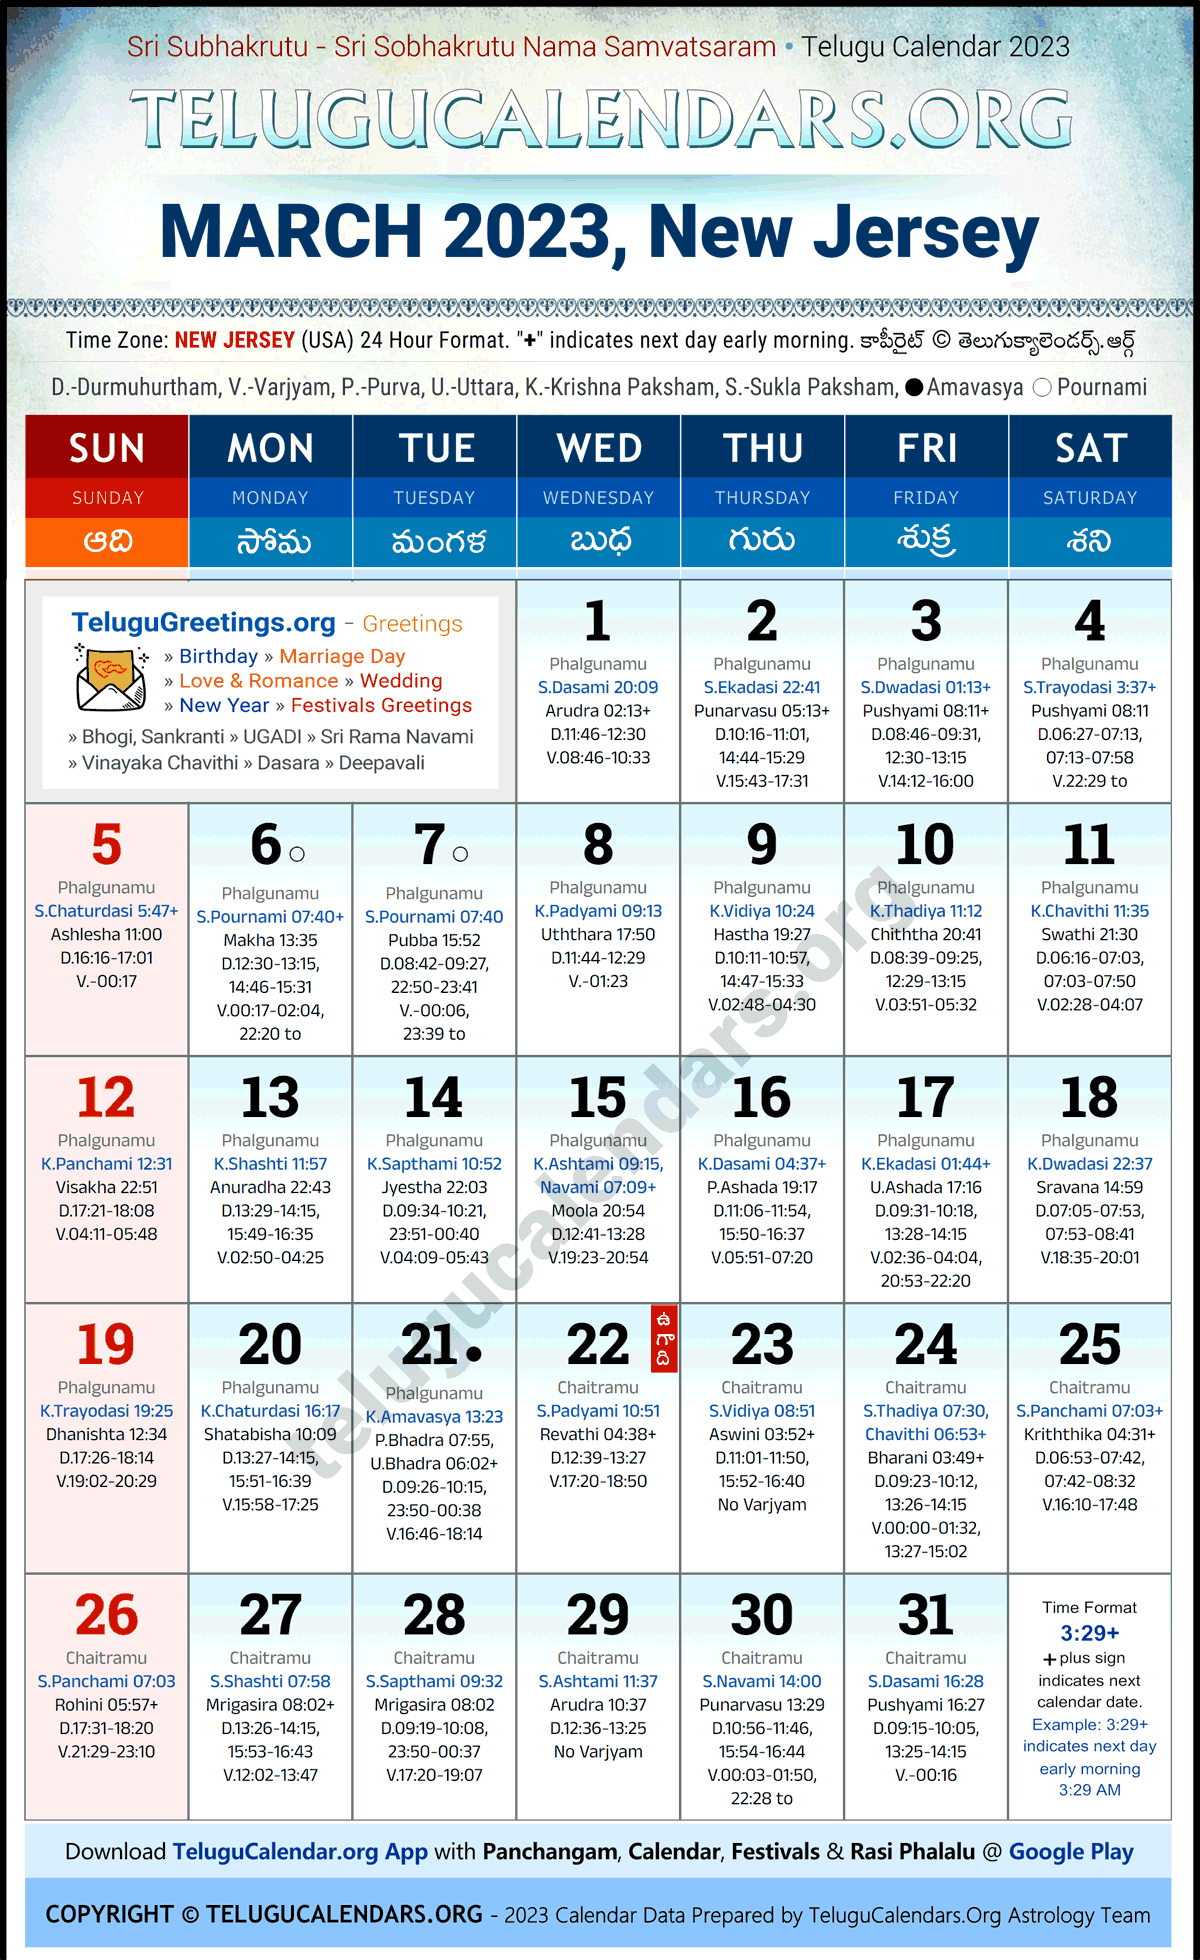 Telugu Calendar 2023 March Festivals for New Jersey